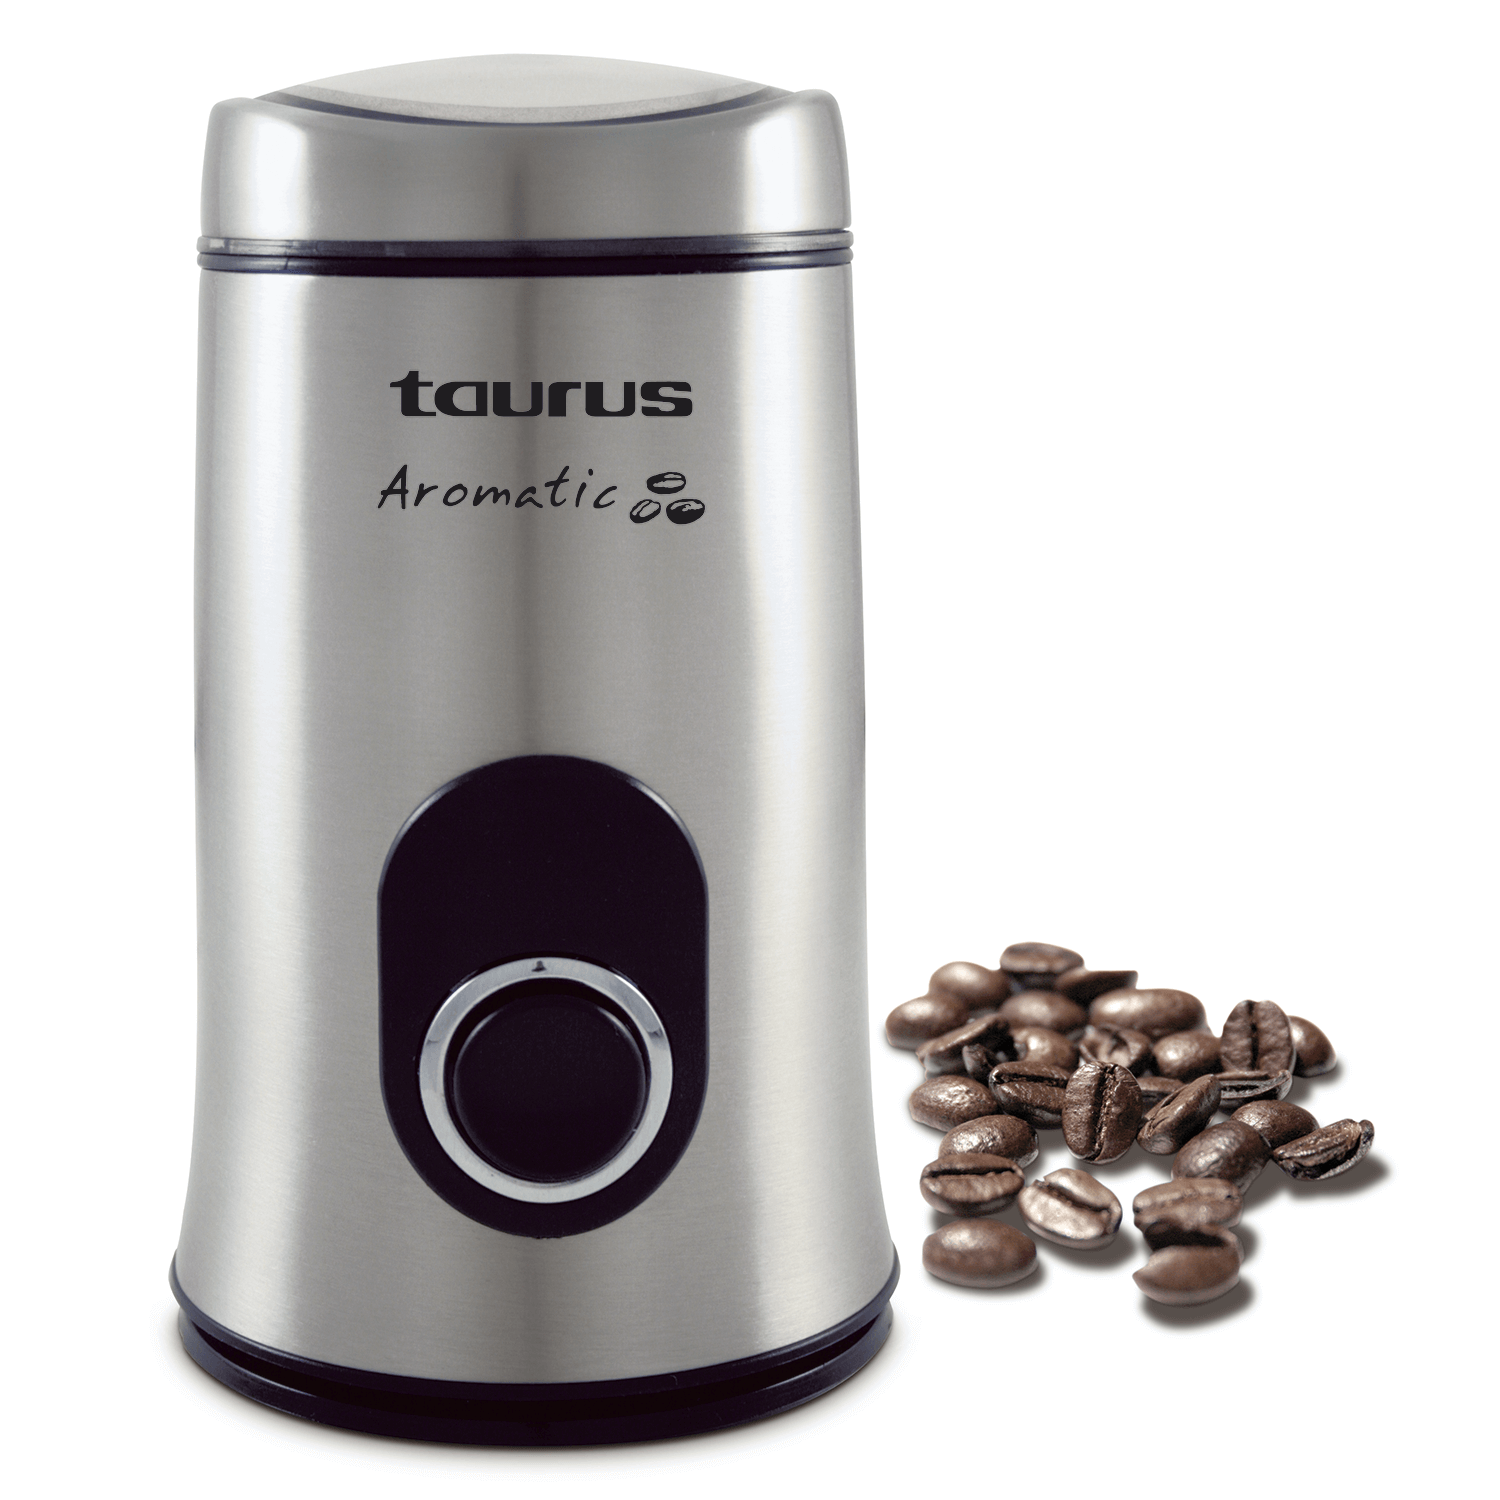 Molinillo Café Taurus aromatic potencia 150w 50g 908.503 908503000 150 acero inoxidable 50gr 50